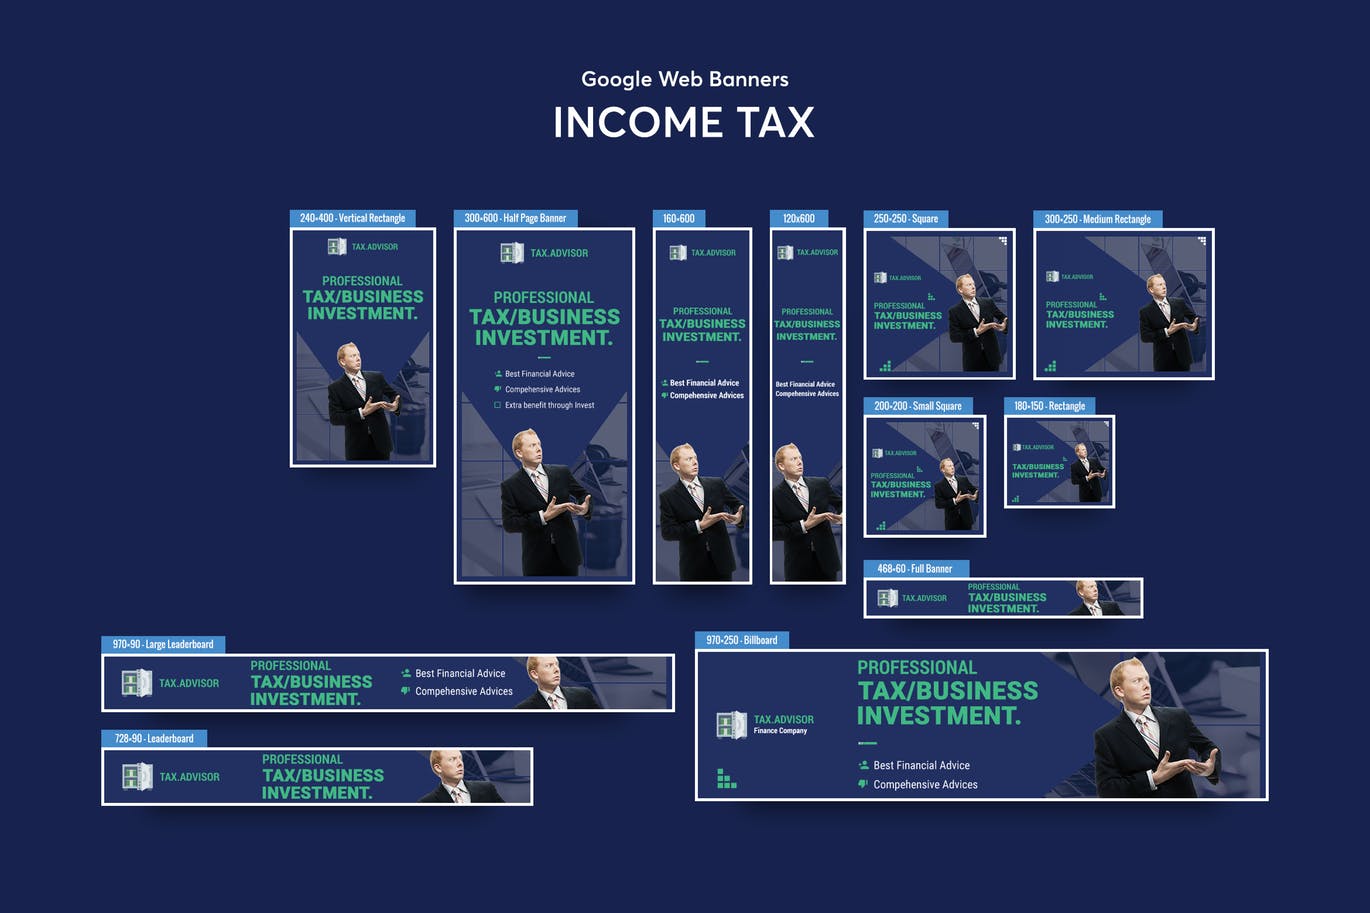 代理记账公司百度谷歌横幅蚂蚁素材精选广告模板 Income Tax Banners Ad插图